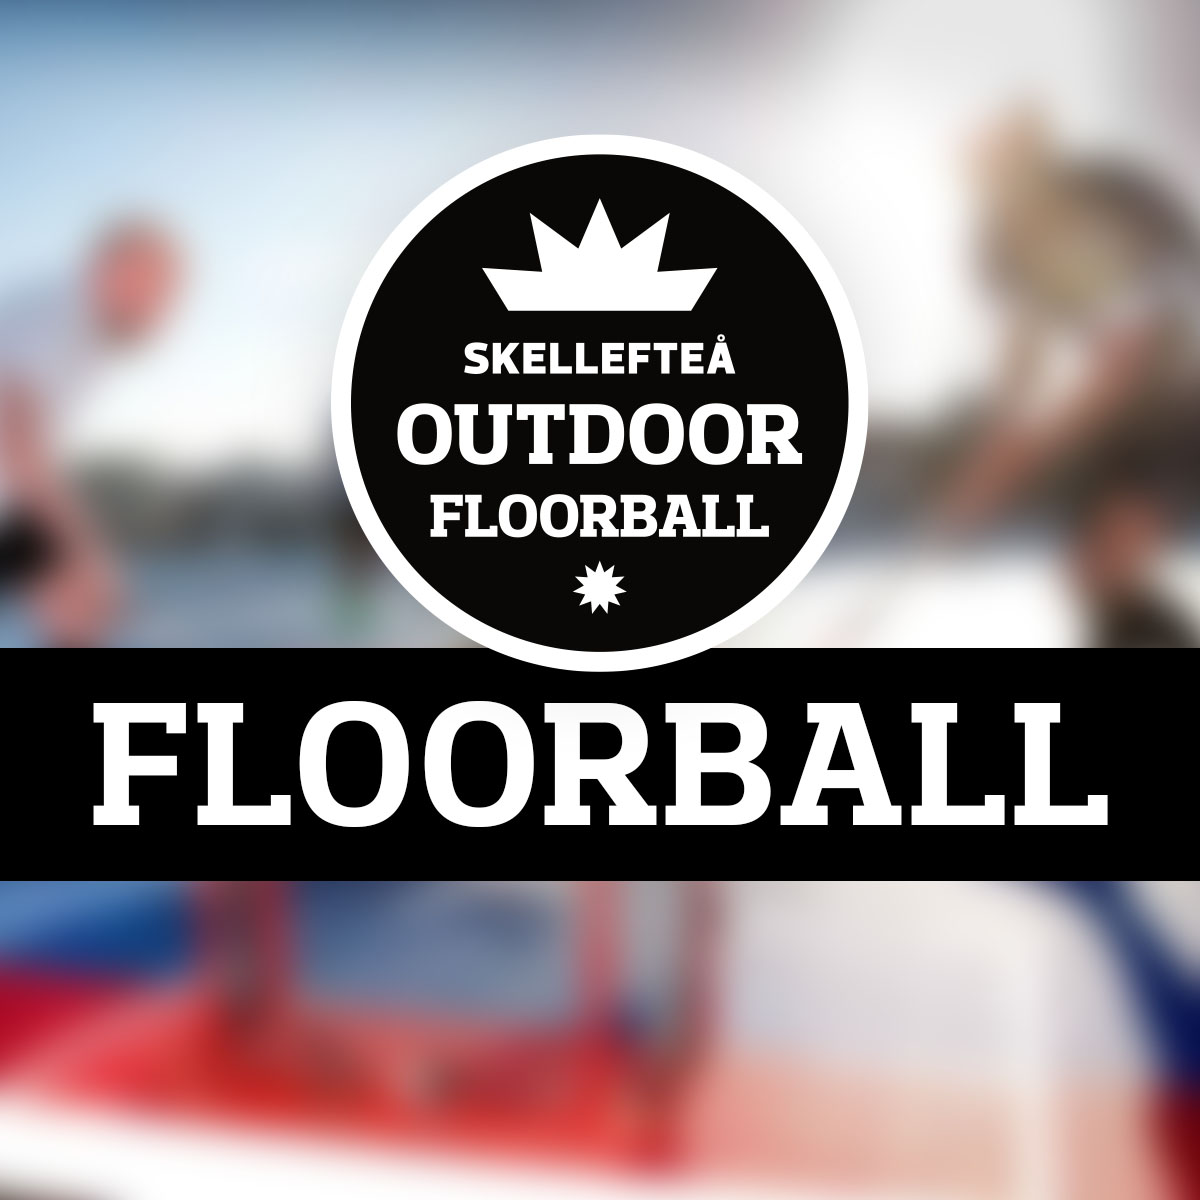 Skellefteå Outdoor Floorball